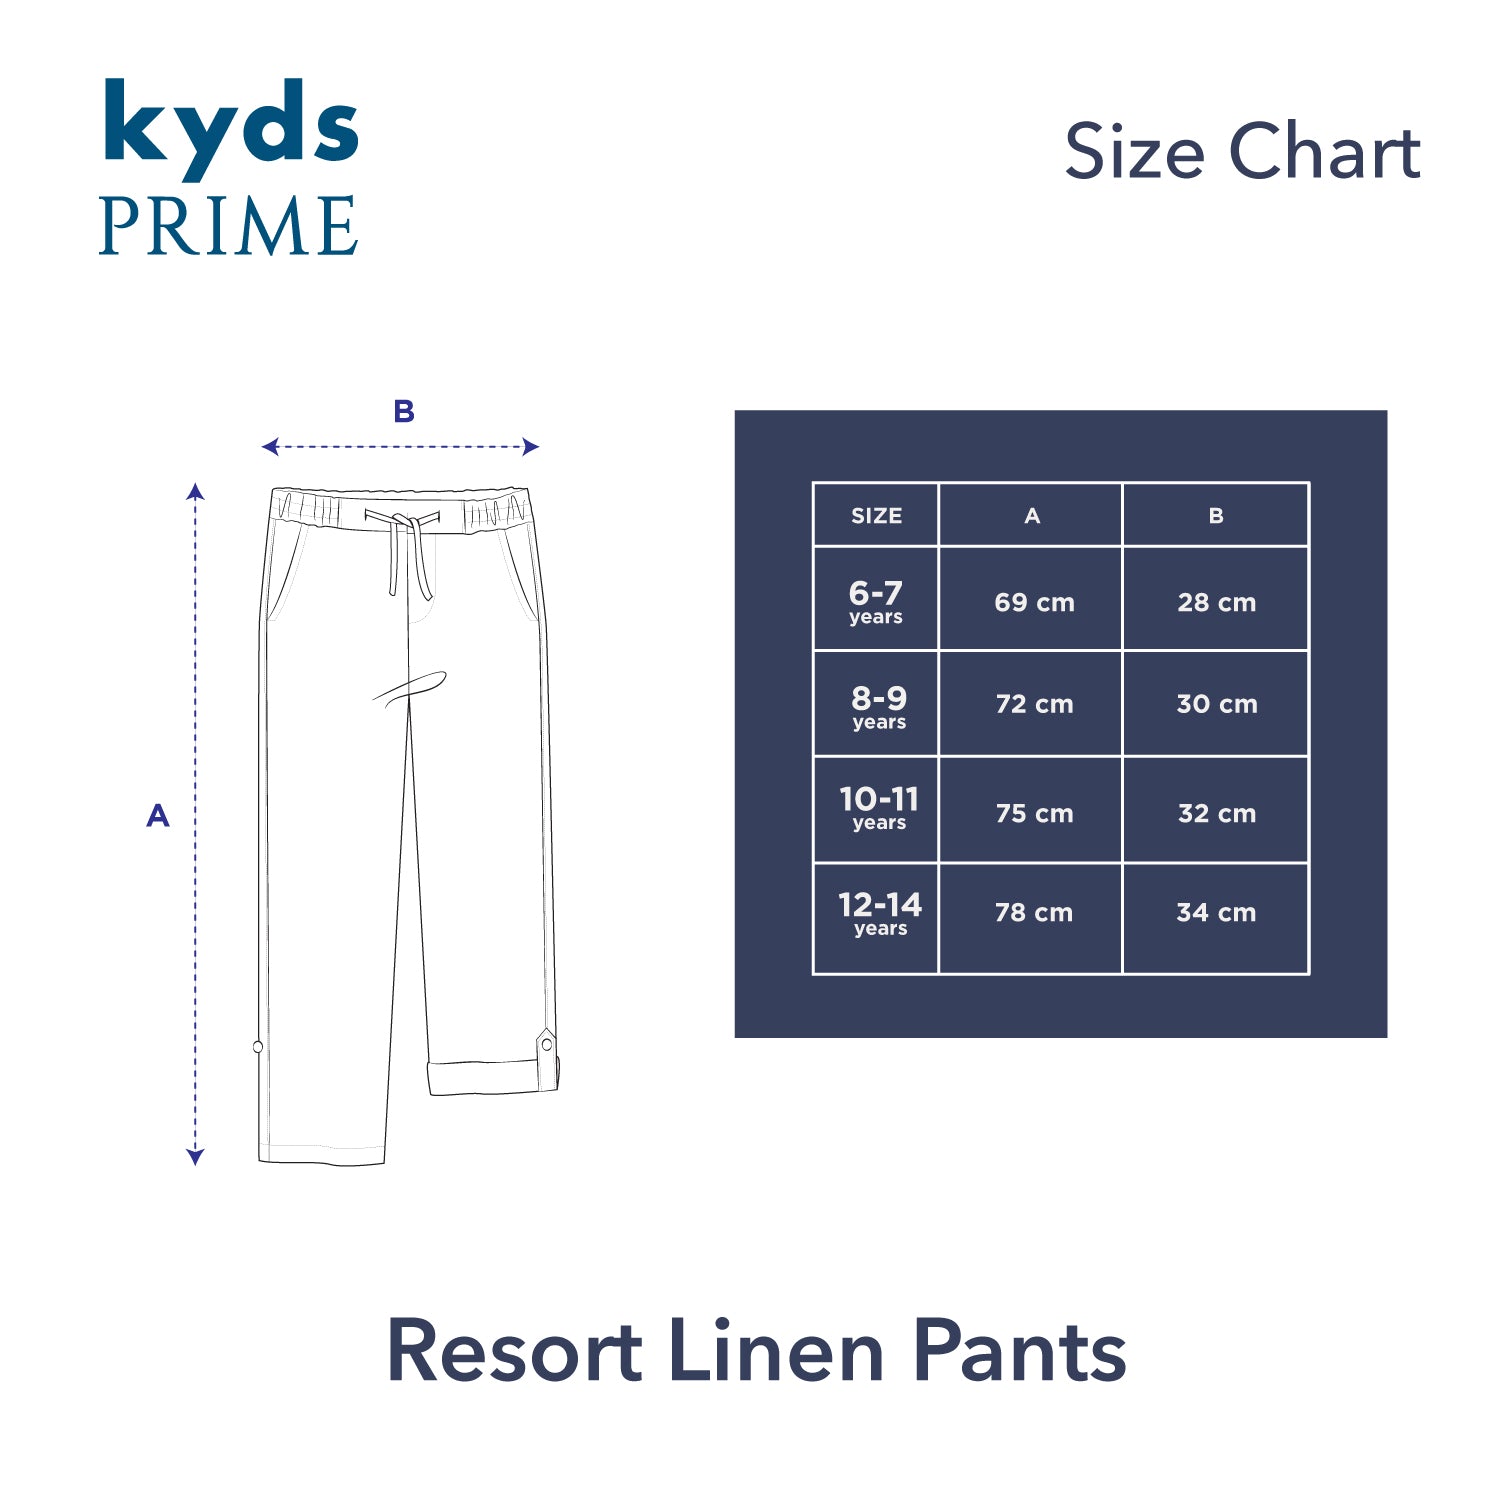 Resort Linen Pants